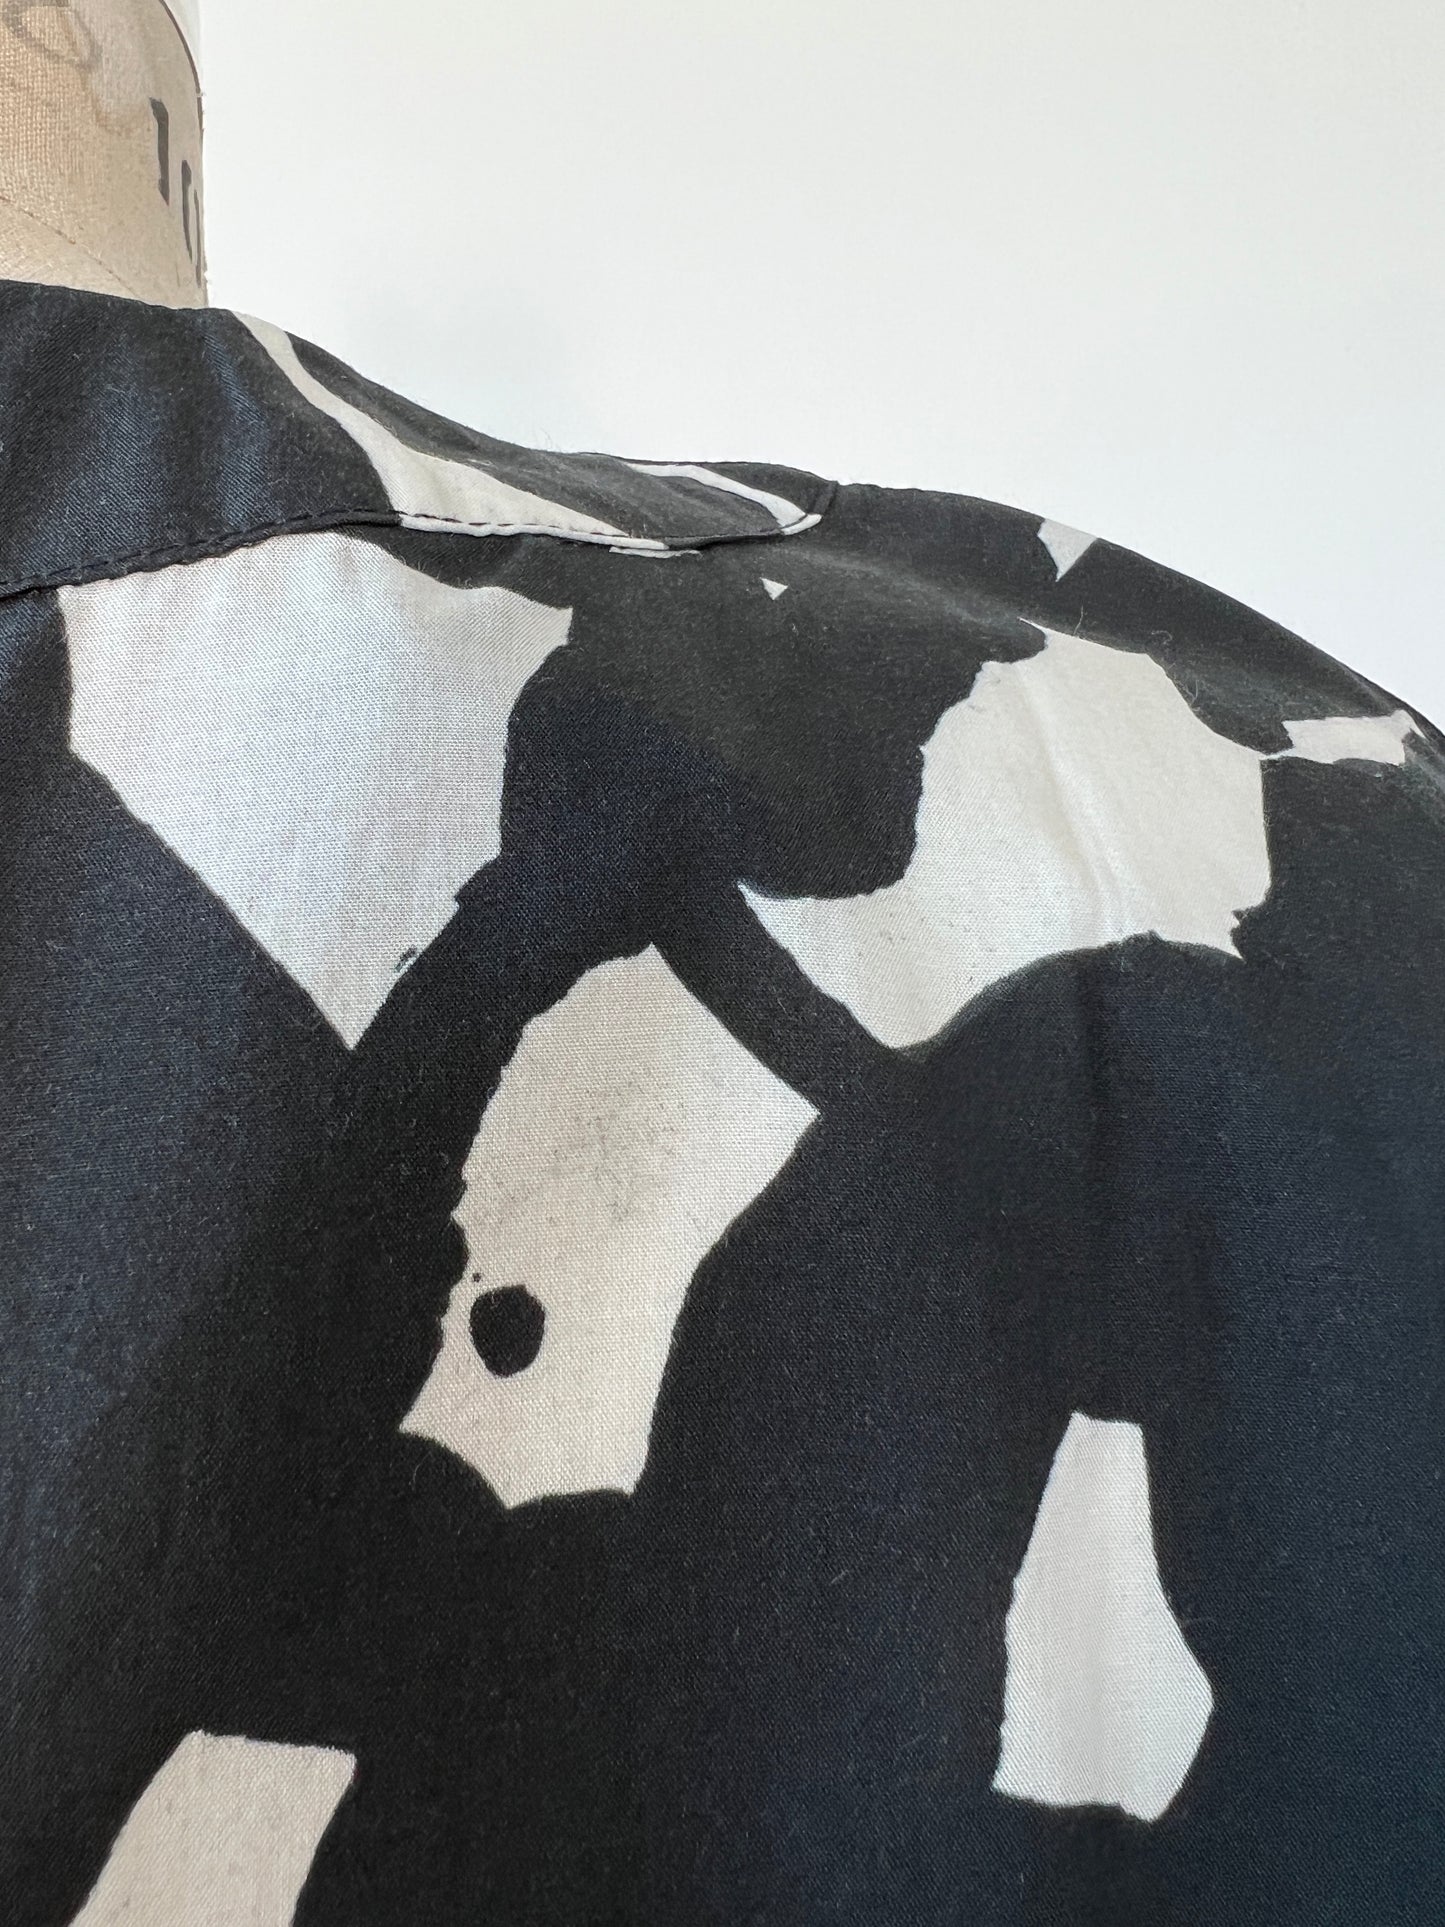 Robe oversized à imprimé graphique noir et blanc (S-M)